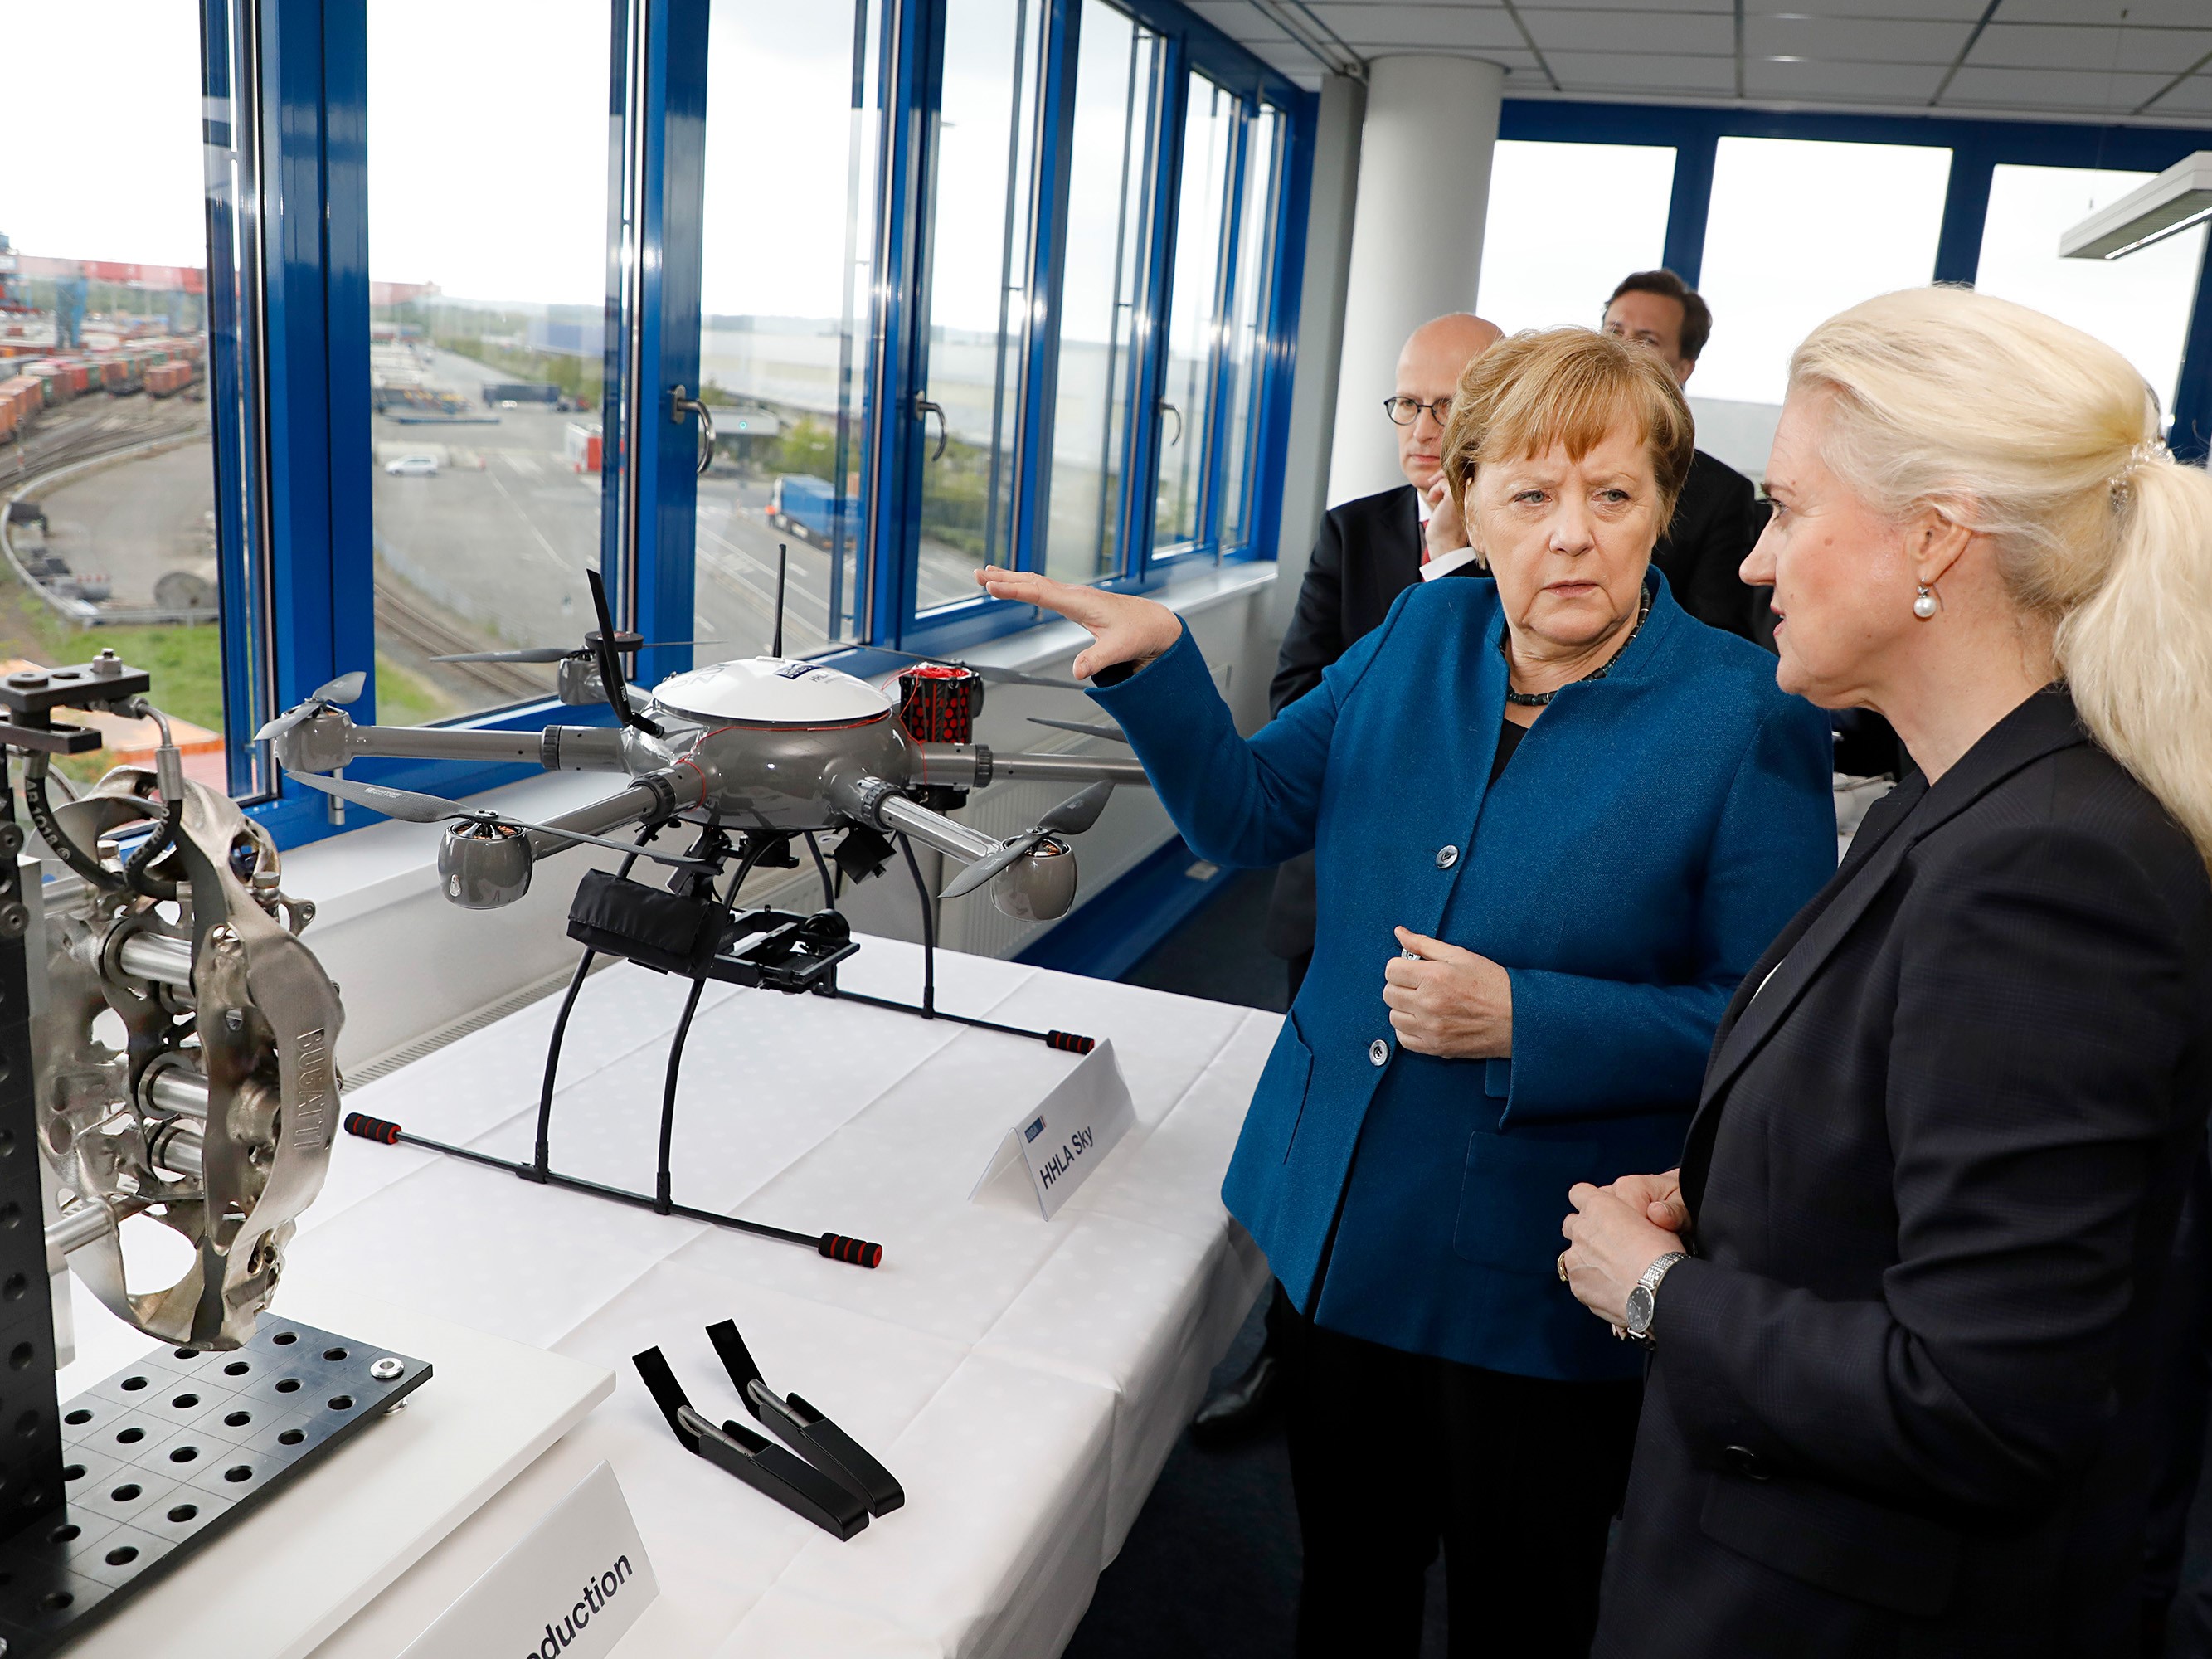 HHLA Sky - Technologische Innovationen aus dem größten Hafen Deutschlands  - HHLA Sky - Vollautomatisierung, Drohnenleitstände und mehr